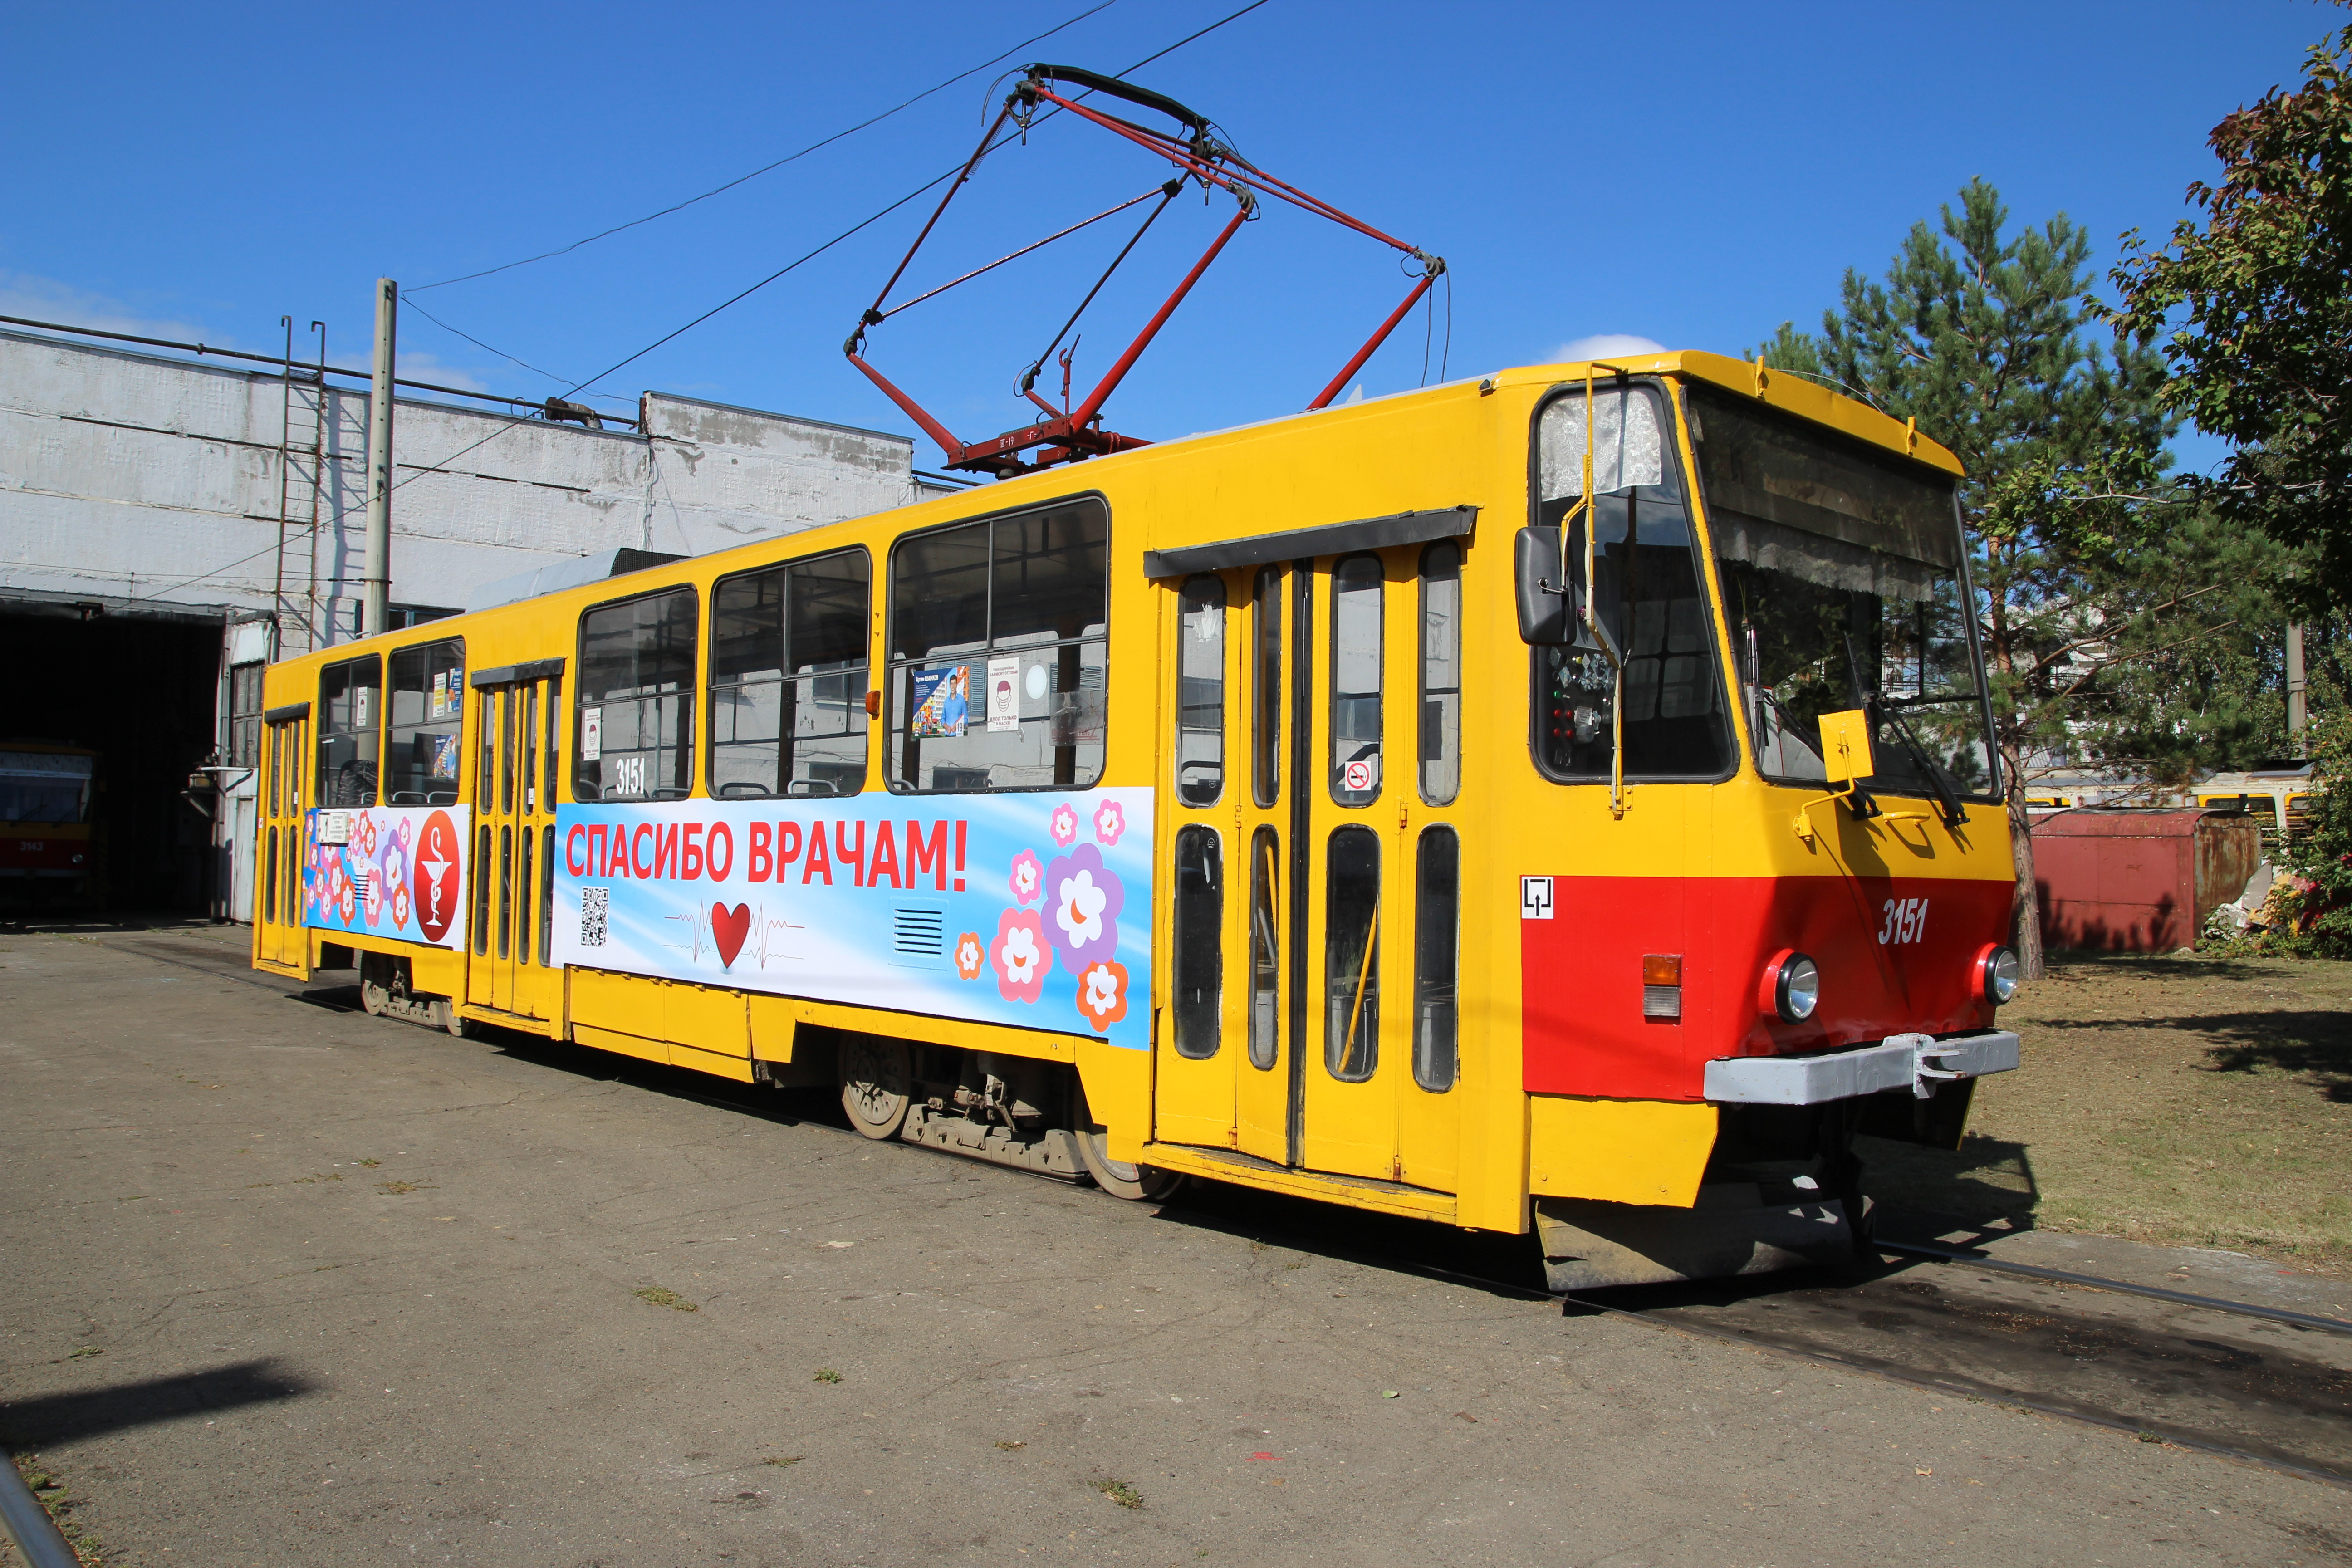 Ко Дню города в Барнауле запустят на линии трамваи с надписью «Спасибо врачам!»